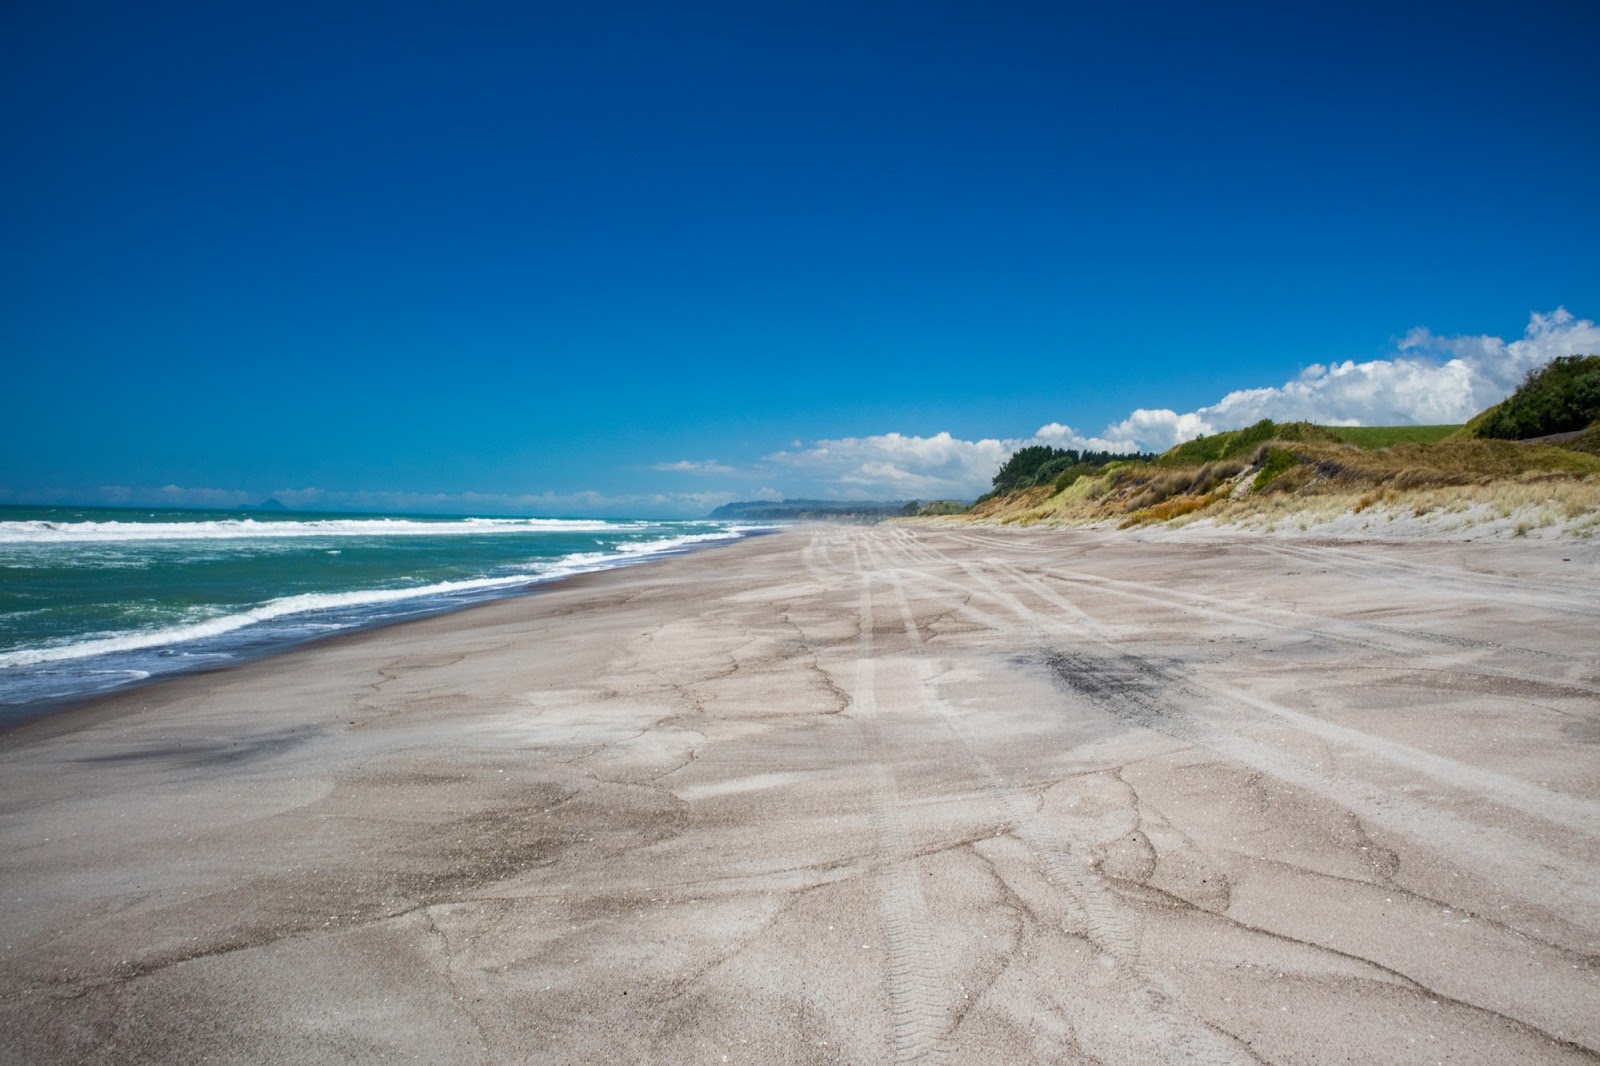 Fotografie cu Otamarakau Beach Access cu o suprafață de nisip strălucitor